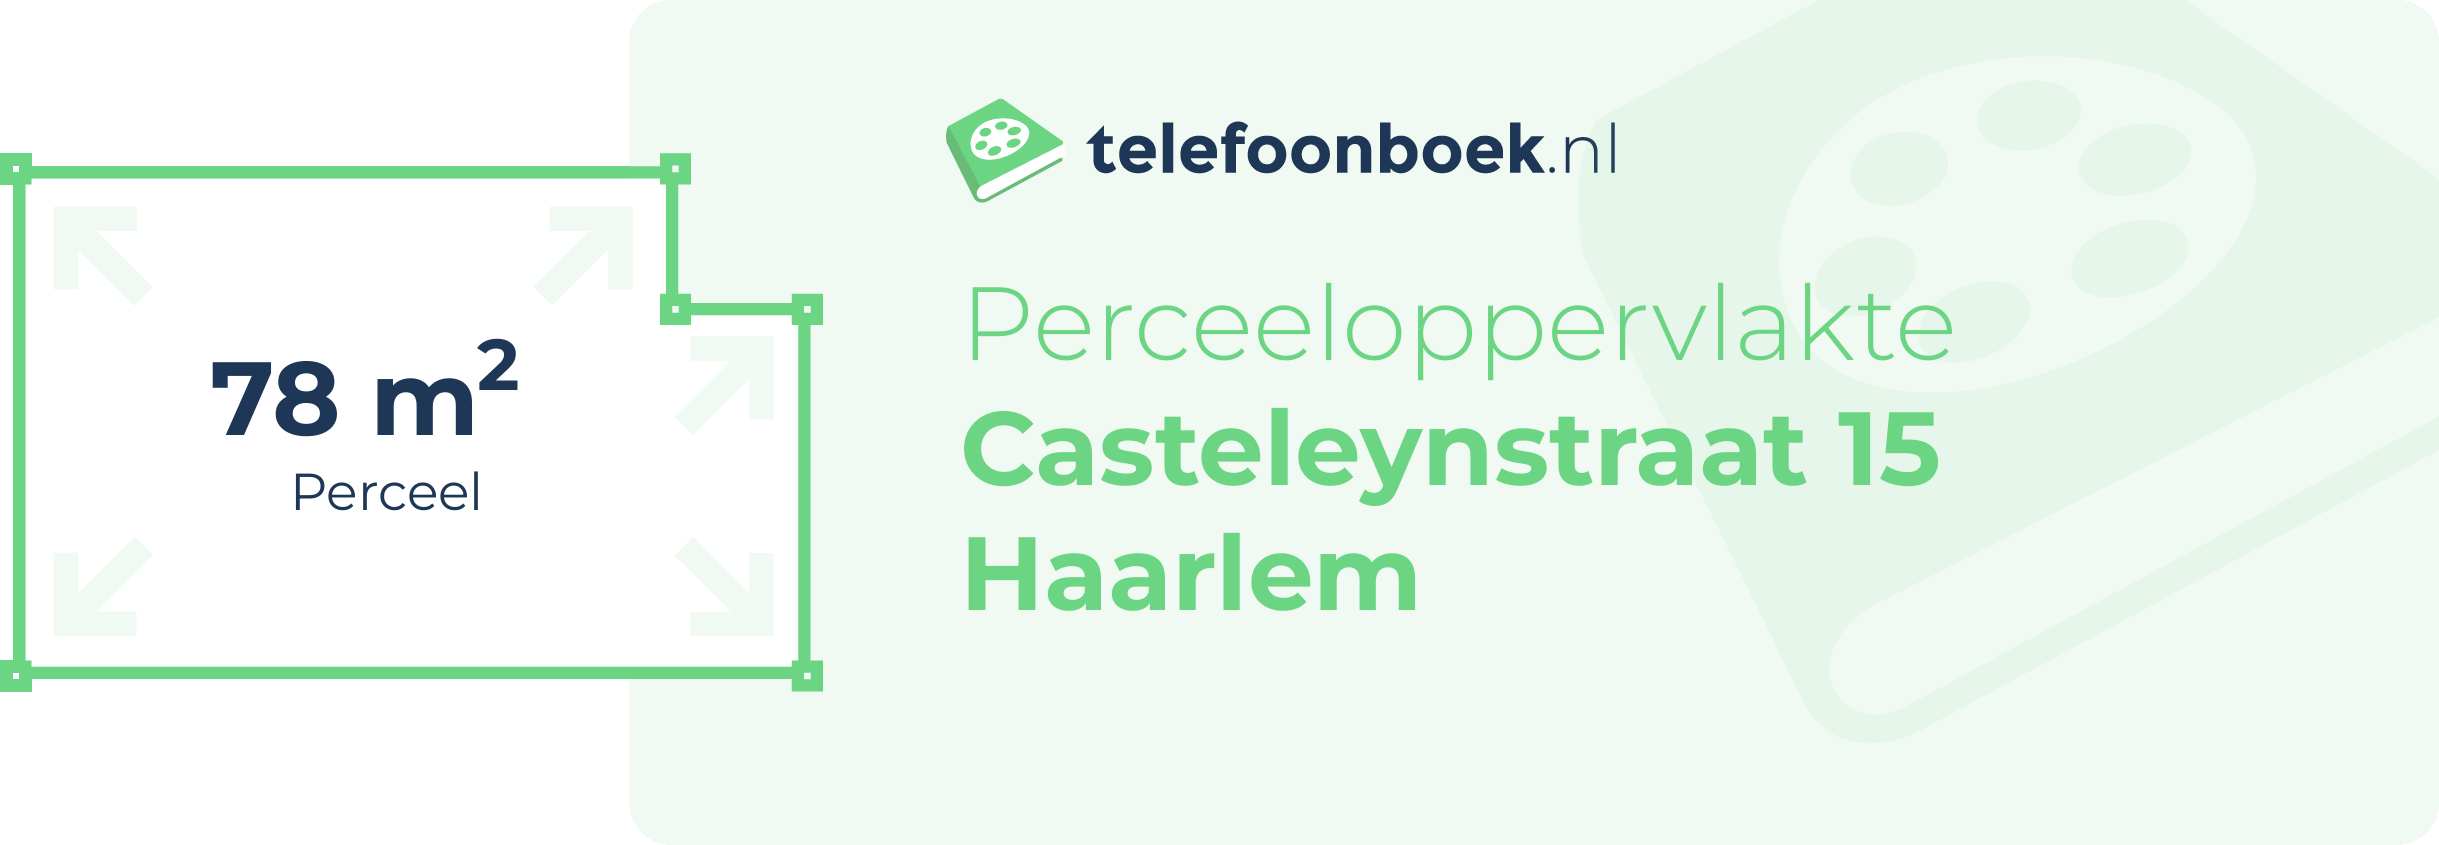 Perceeloppervlakte Casteleynstraat 15 Haarlem